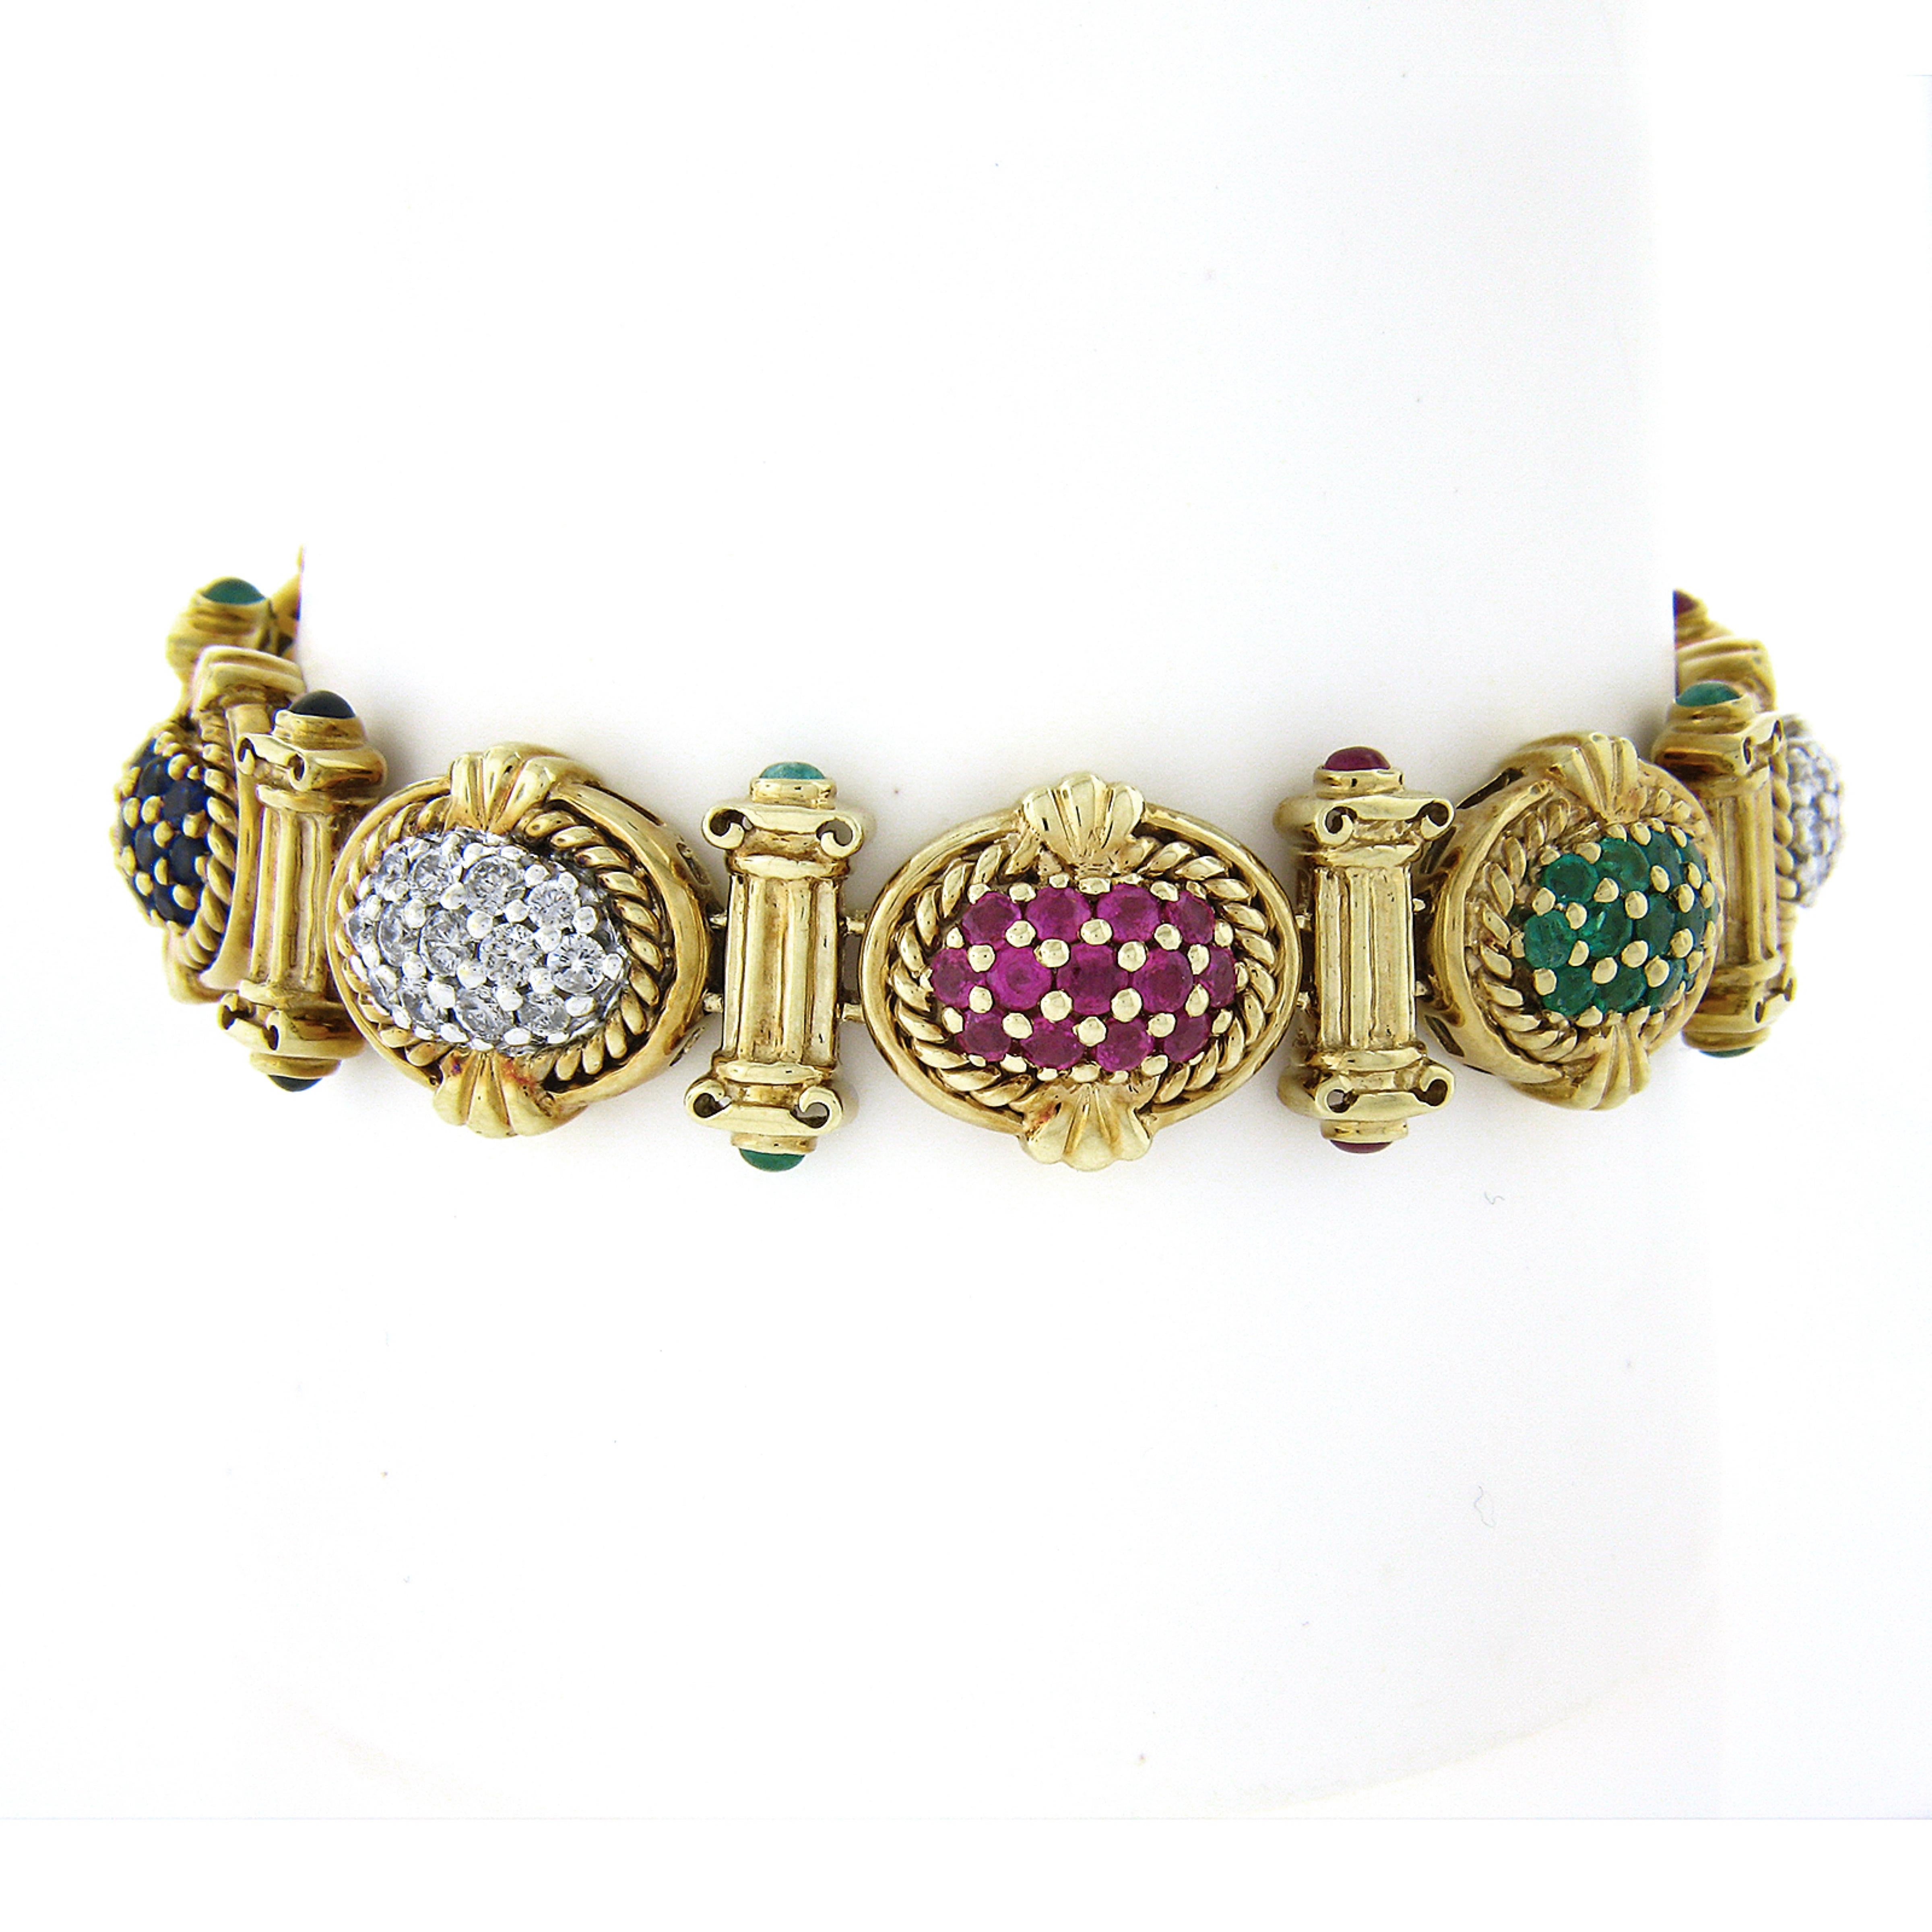 Ce magnifique bracelet vintage a été fabriqué en or jaune massif 14k et présente des maillons ovales très uniques et détaillés qui sont décorés de fils torsadés en or et ornés de saphirs, rubis, émeraudes et diamants de première qualité. Les